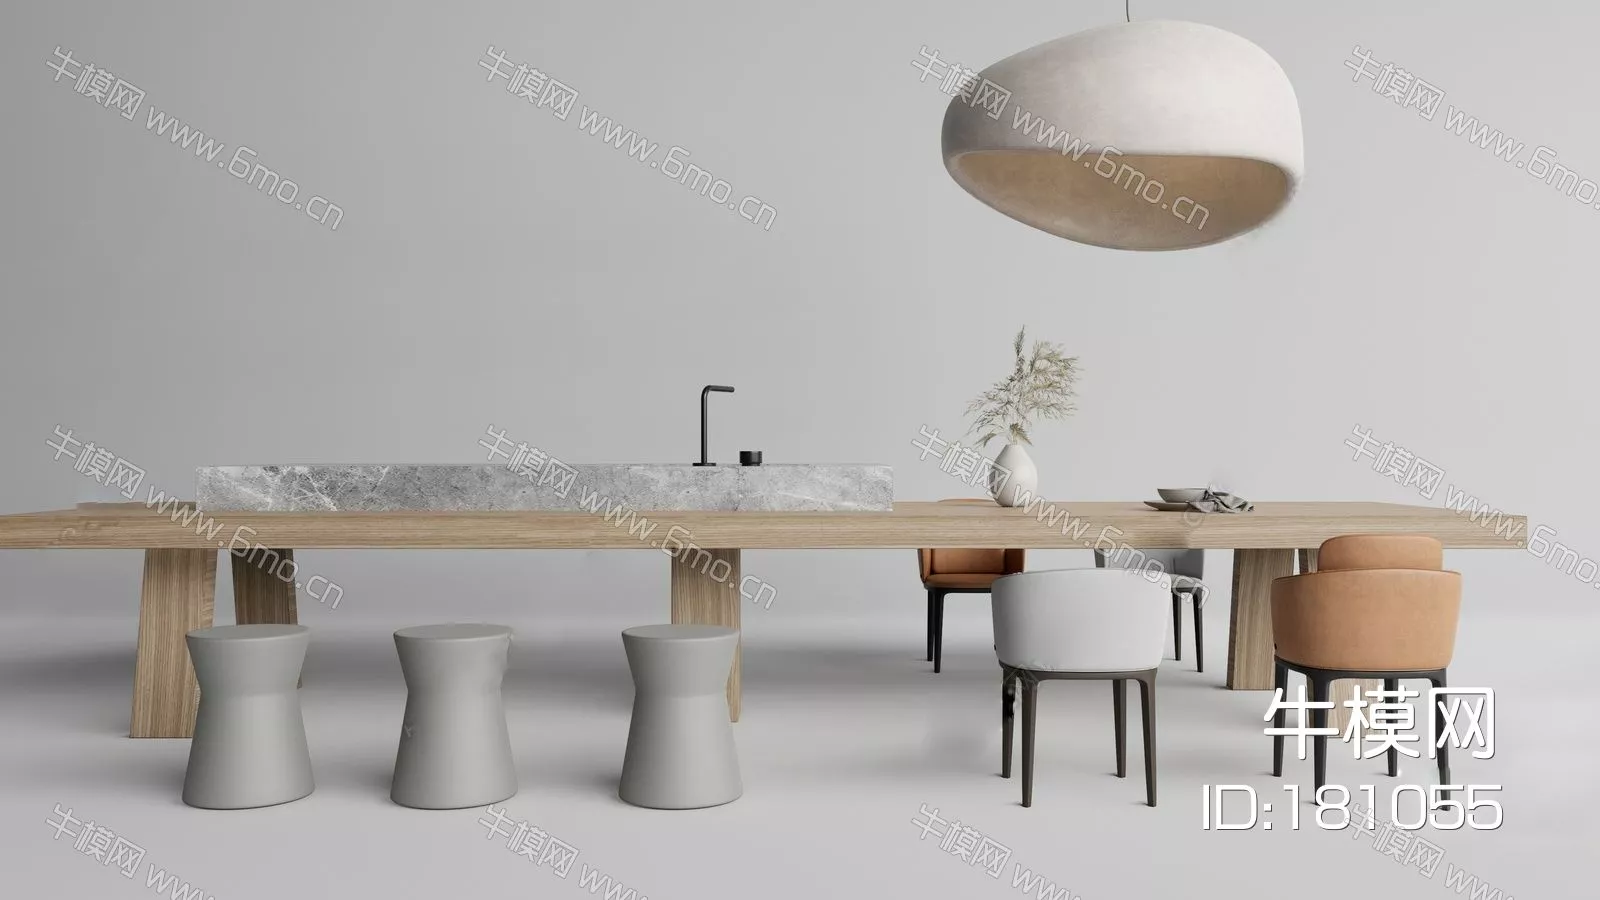 MODERN DINING TABLE SET - SKETCHUP 3D MODEL - ENSCAPE - 181055